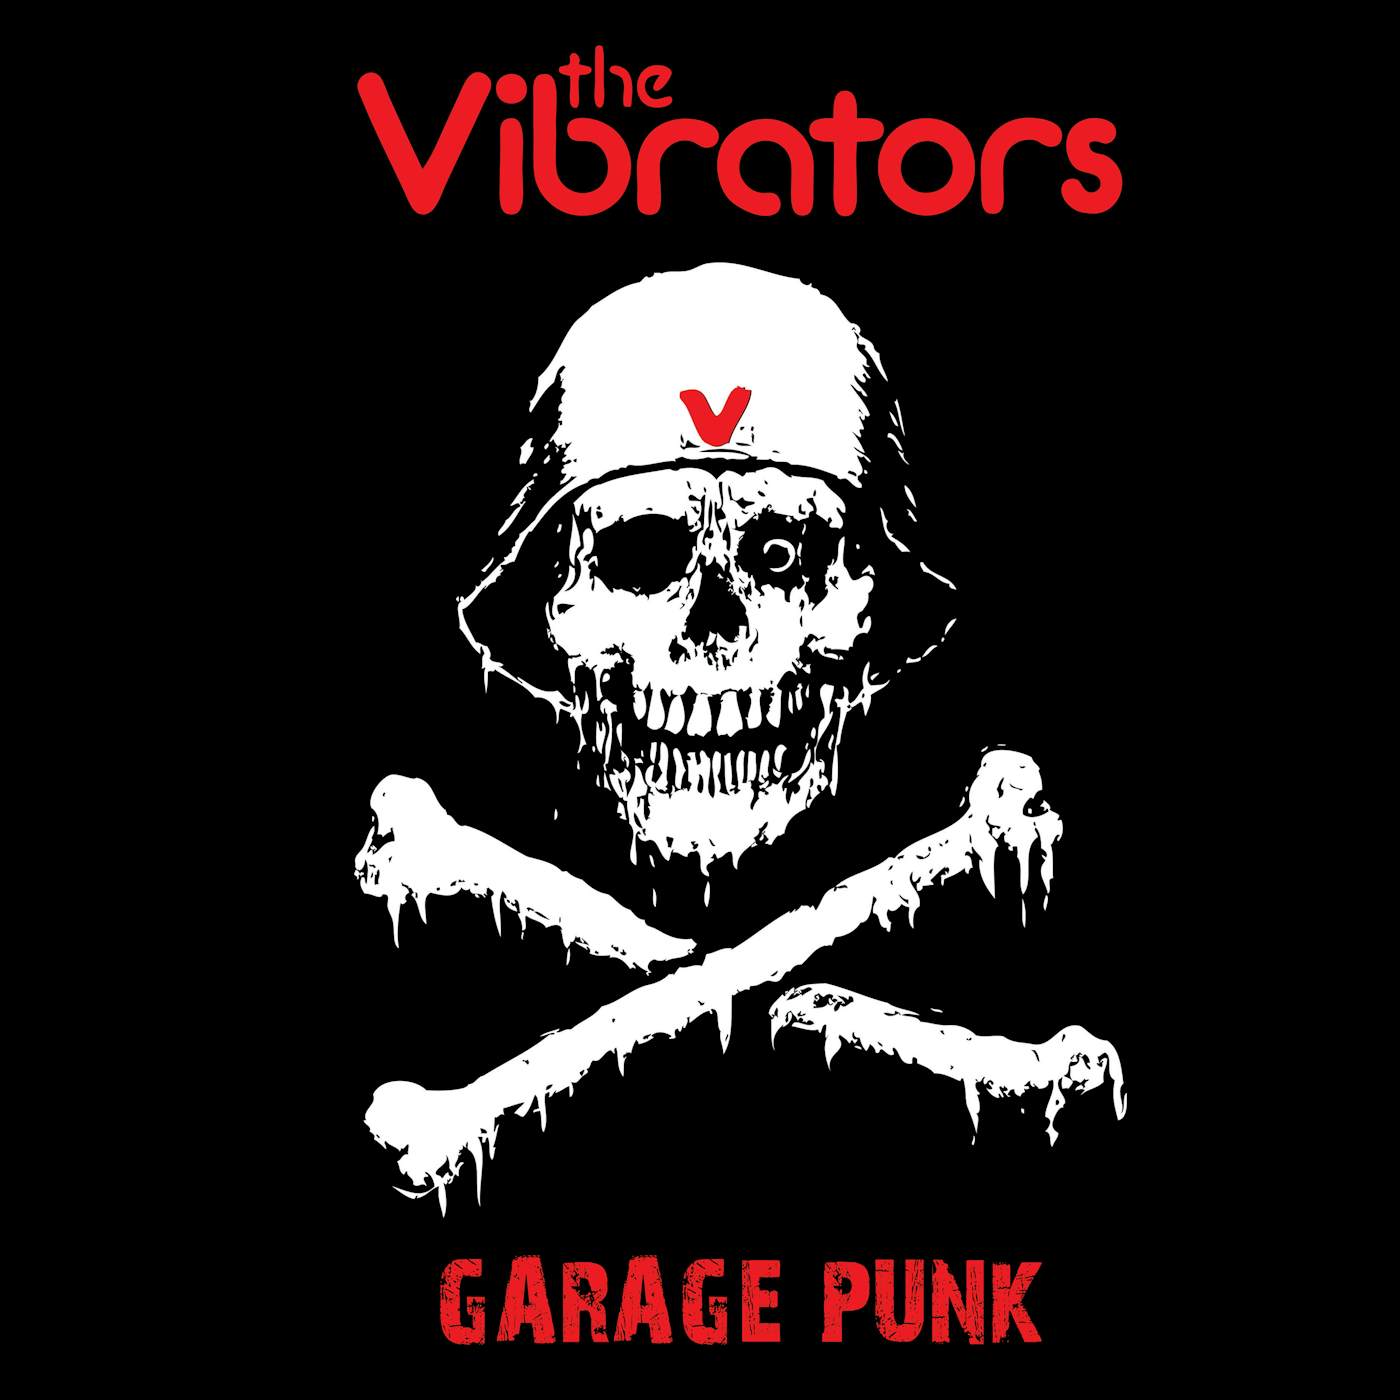 The Vibrators Garage Punk Vinyl Record